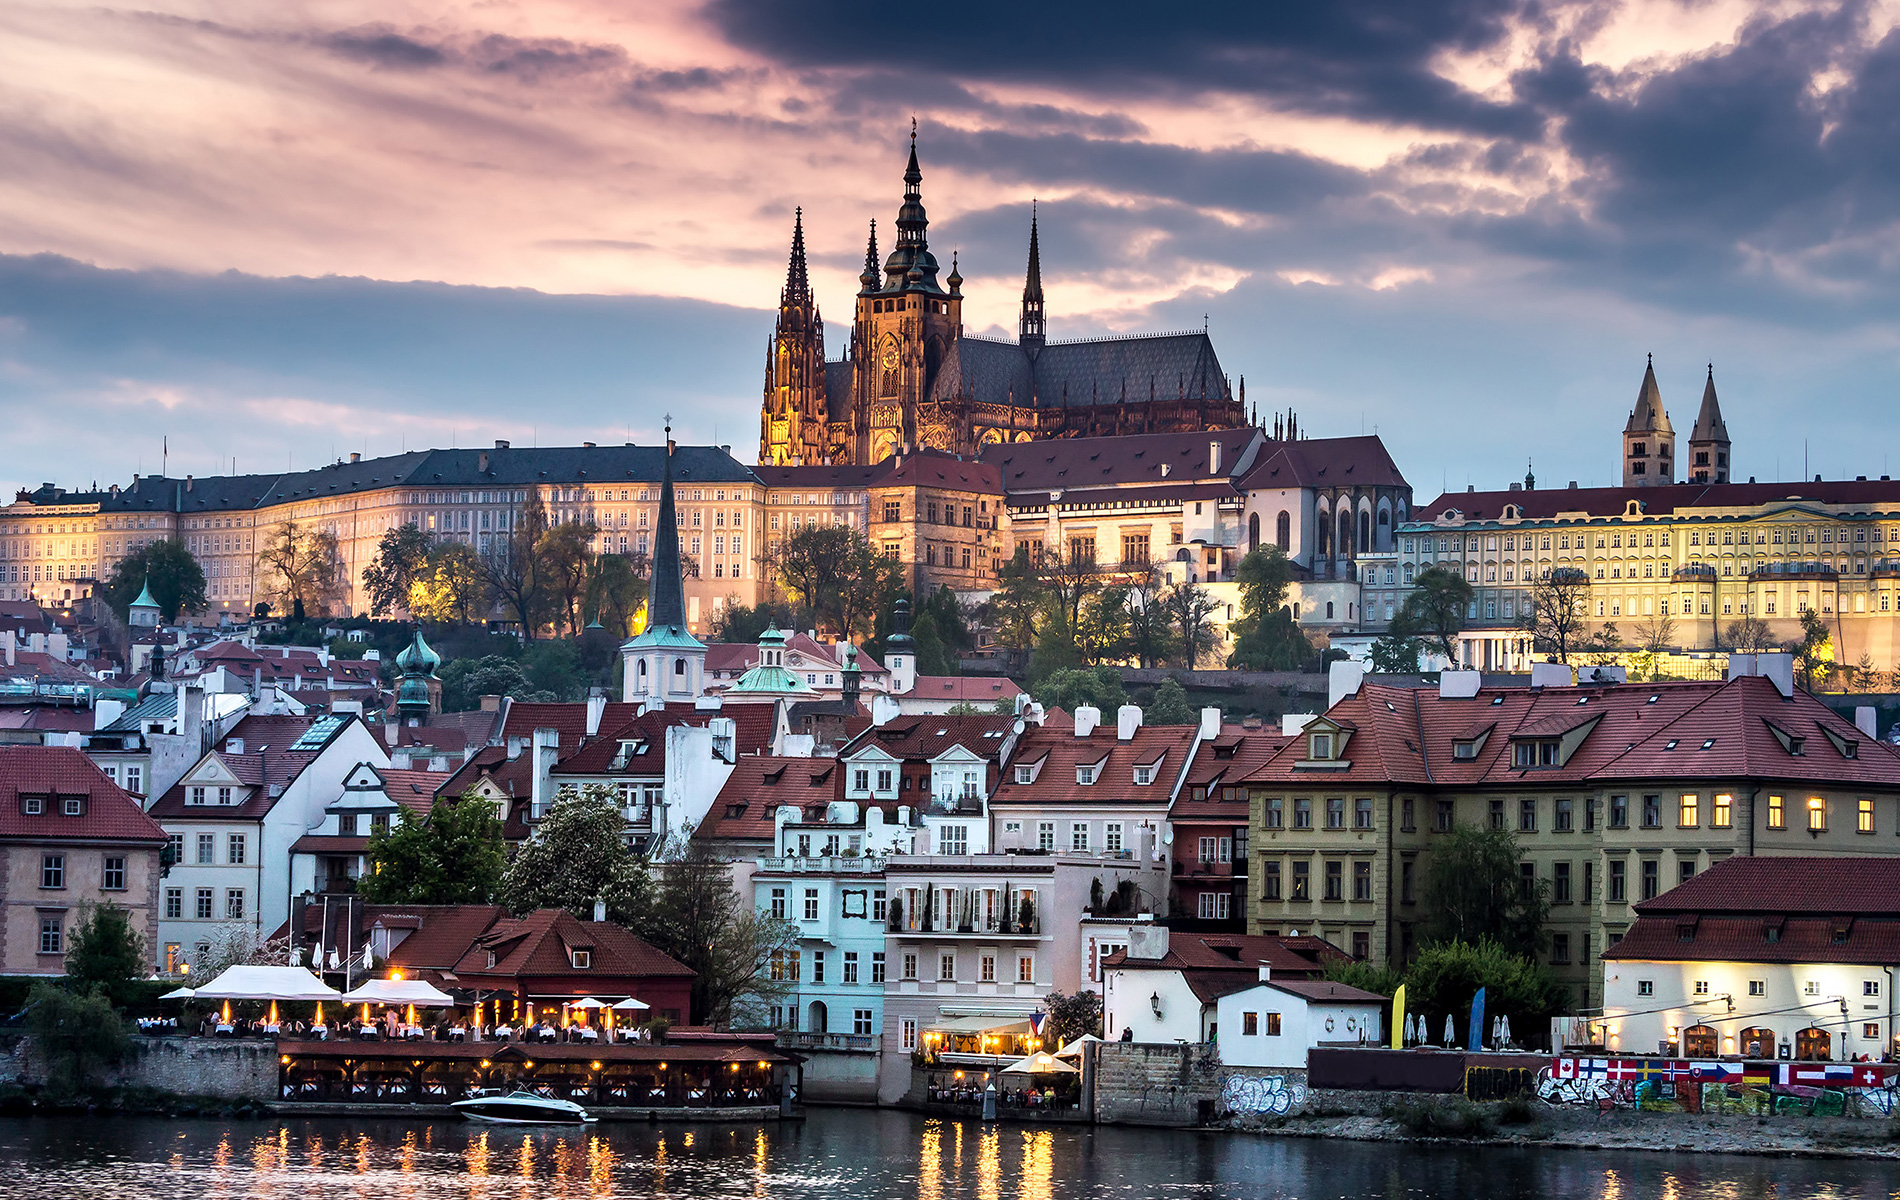 Dove si colloca Praga nel confronto con le altre città europee per alloggio, lavoro, mobilità e divertimento?